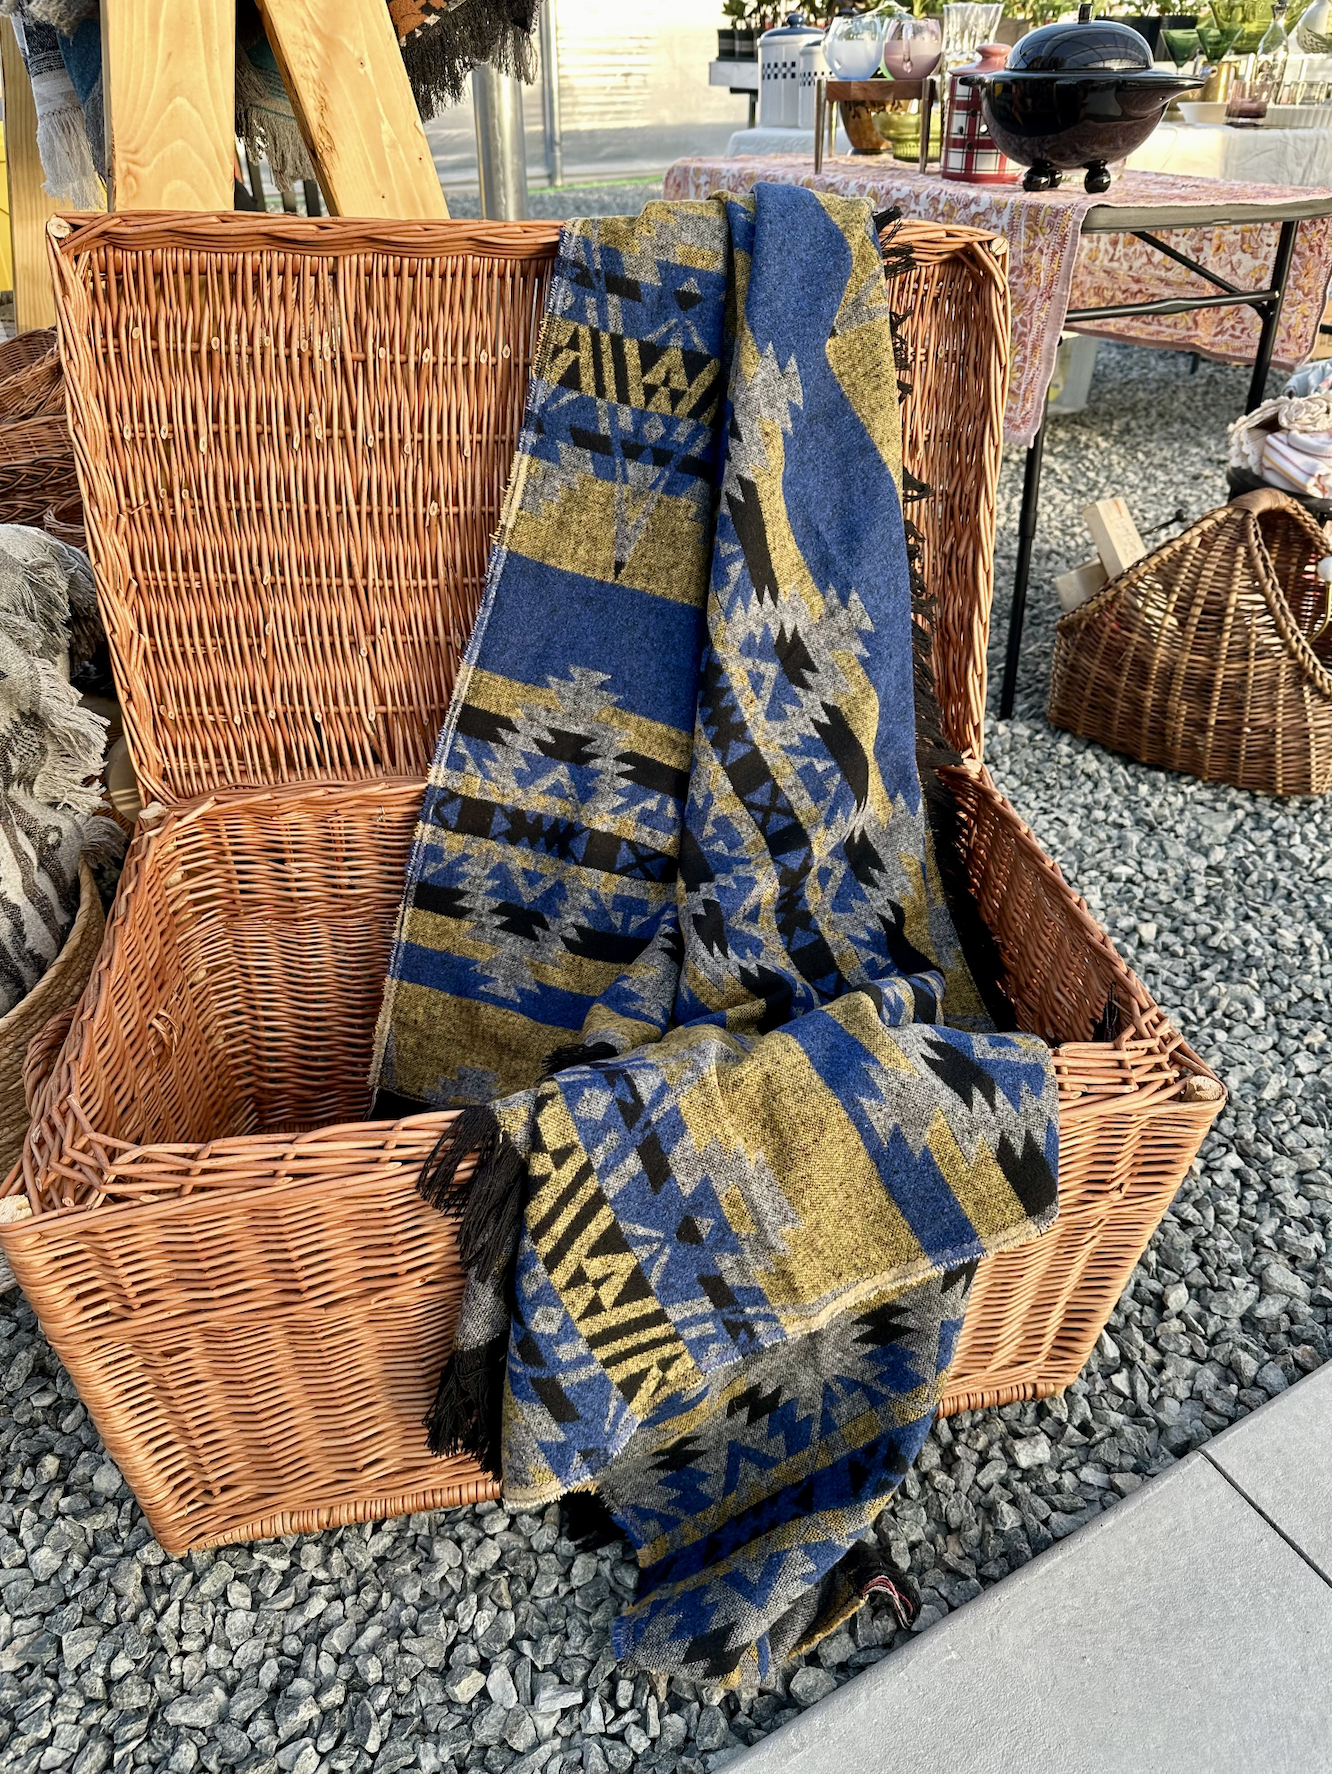 west coast alchemist handmade blankets baskets in abbotsford fraser valley british columbia canada 11